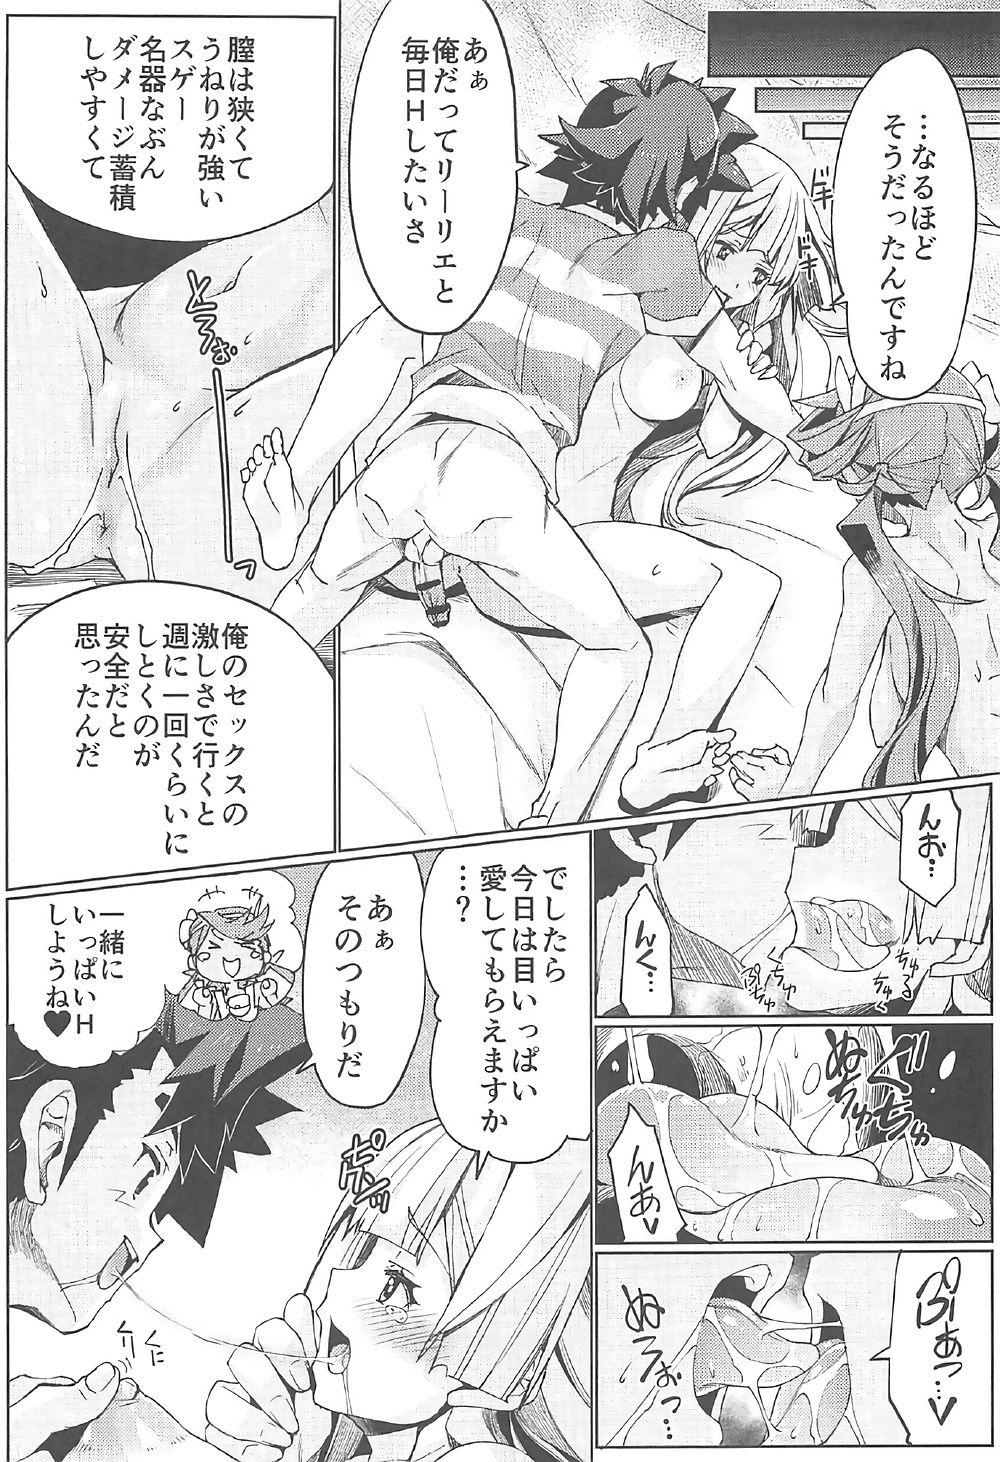 Titties Watashi ga sono Ki ni nareba Ronriteki ni! 2!! - Pokemon Nice Tits - Page 10